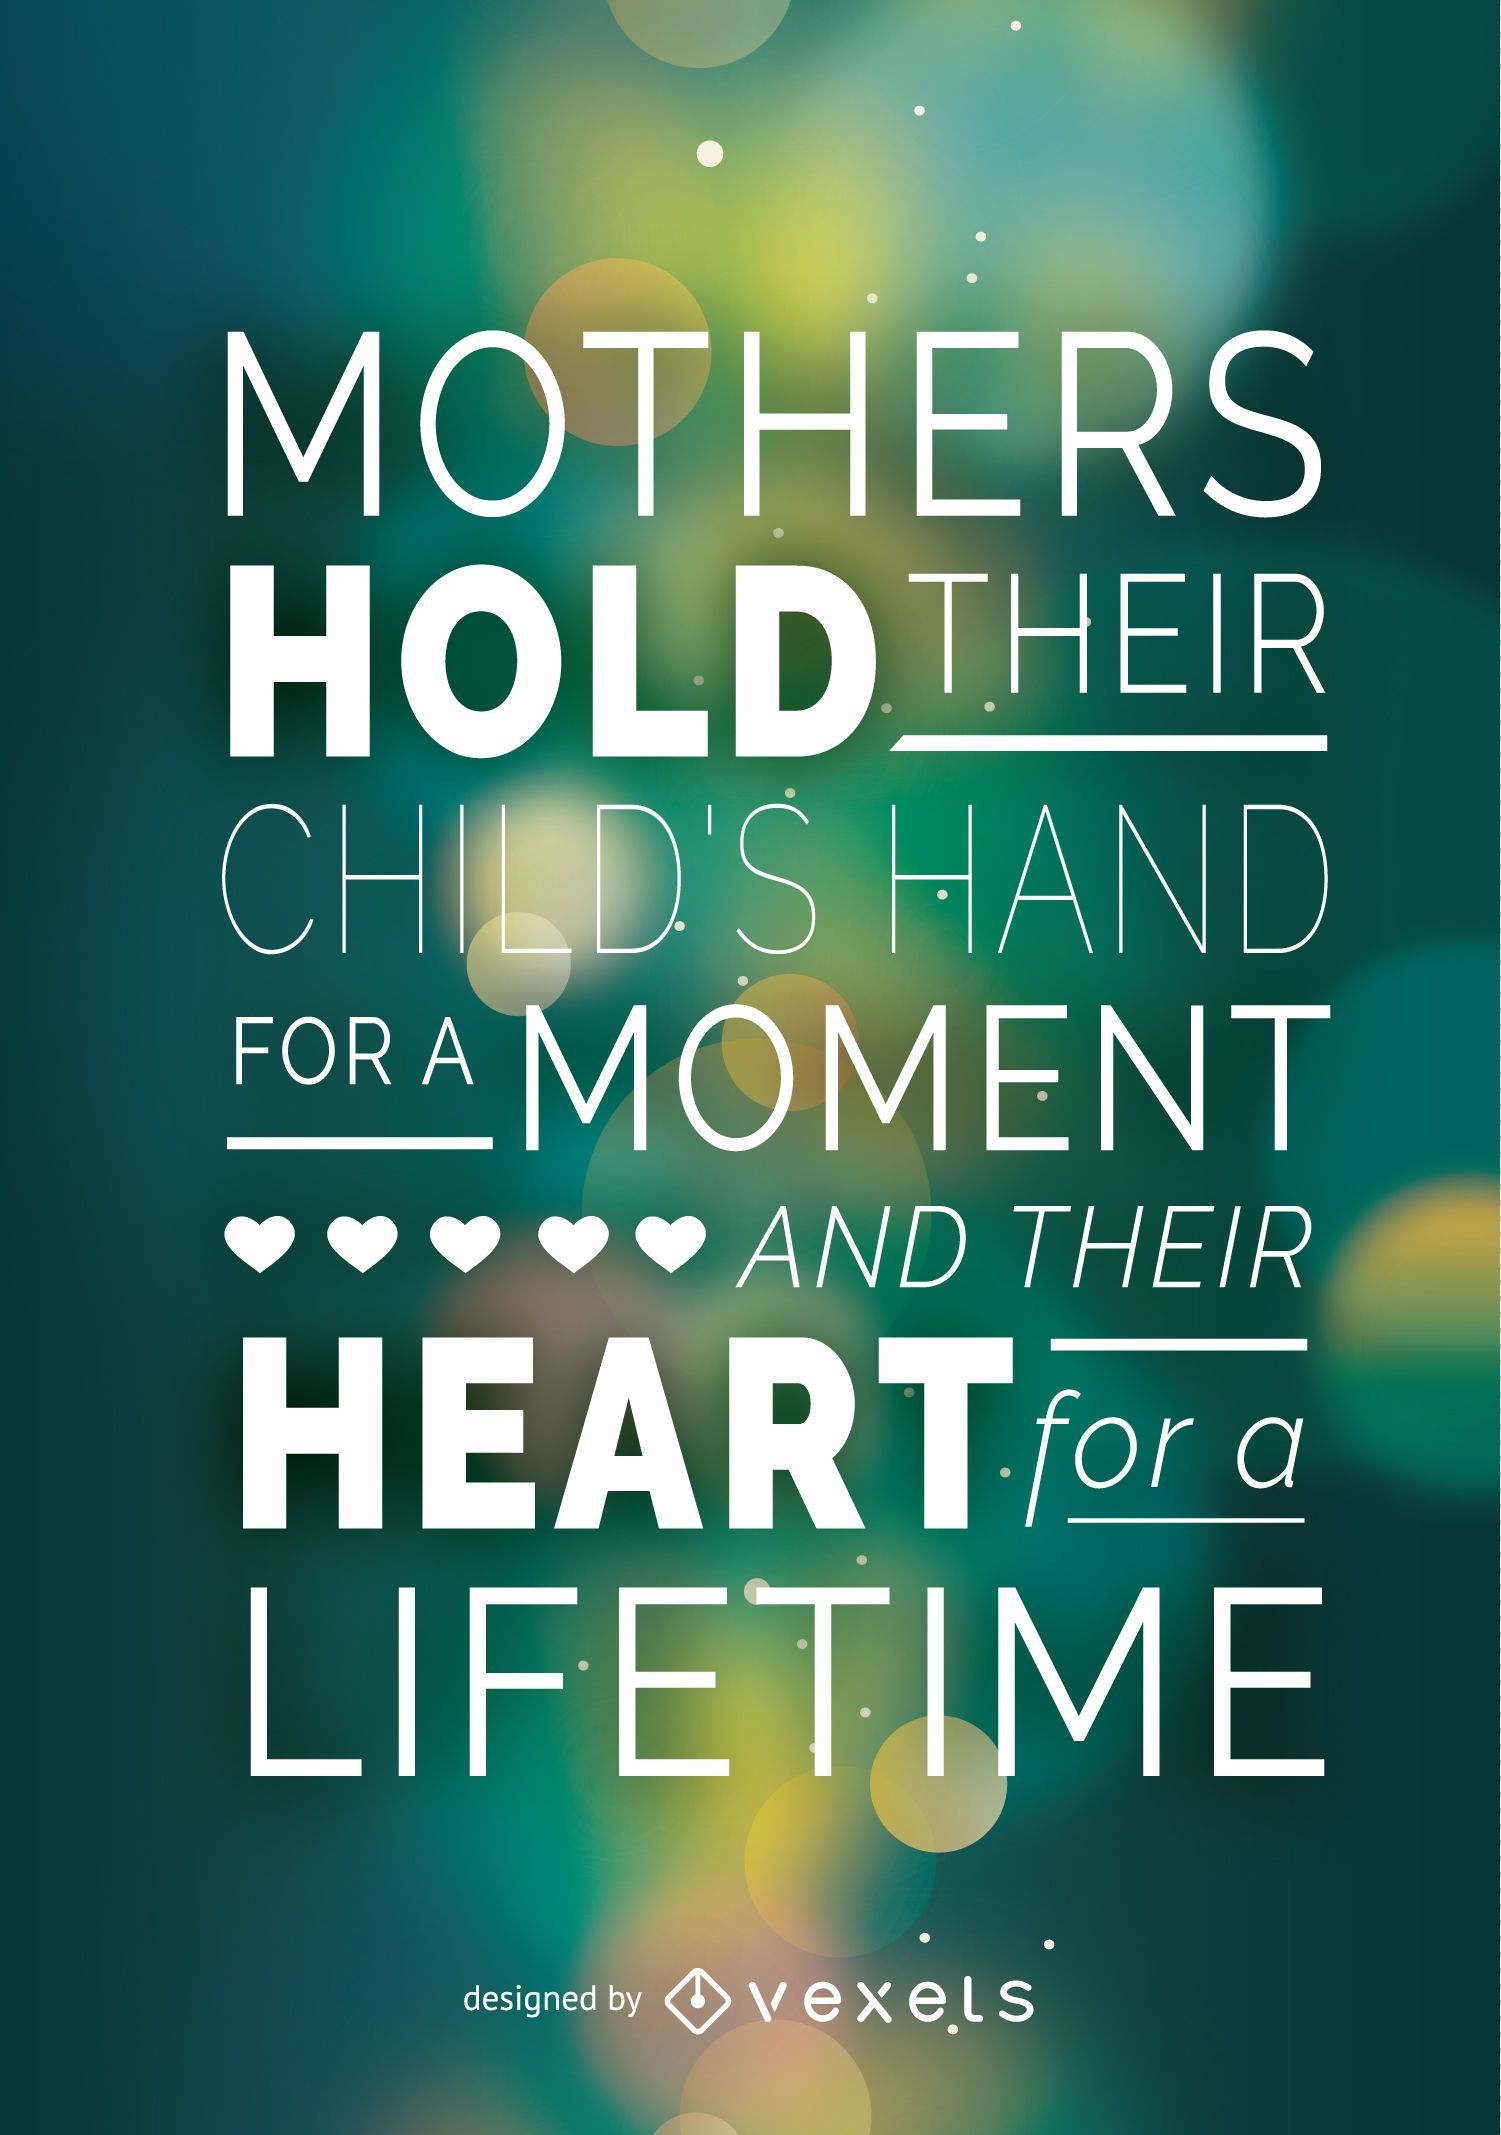 Cartaz do dia das mães com citação